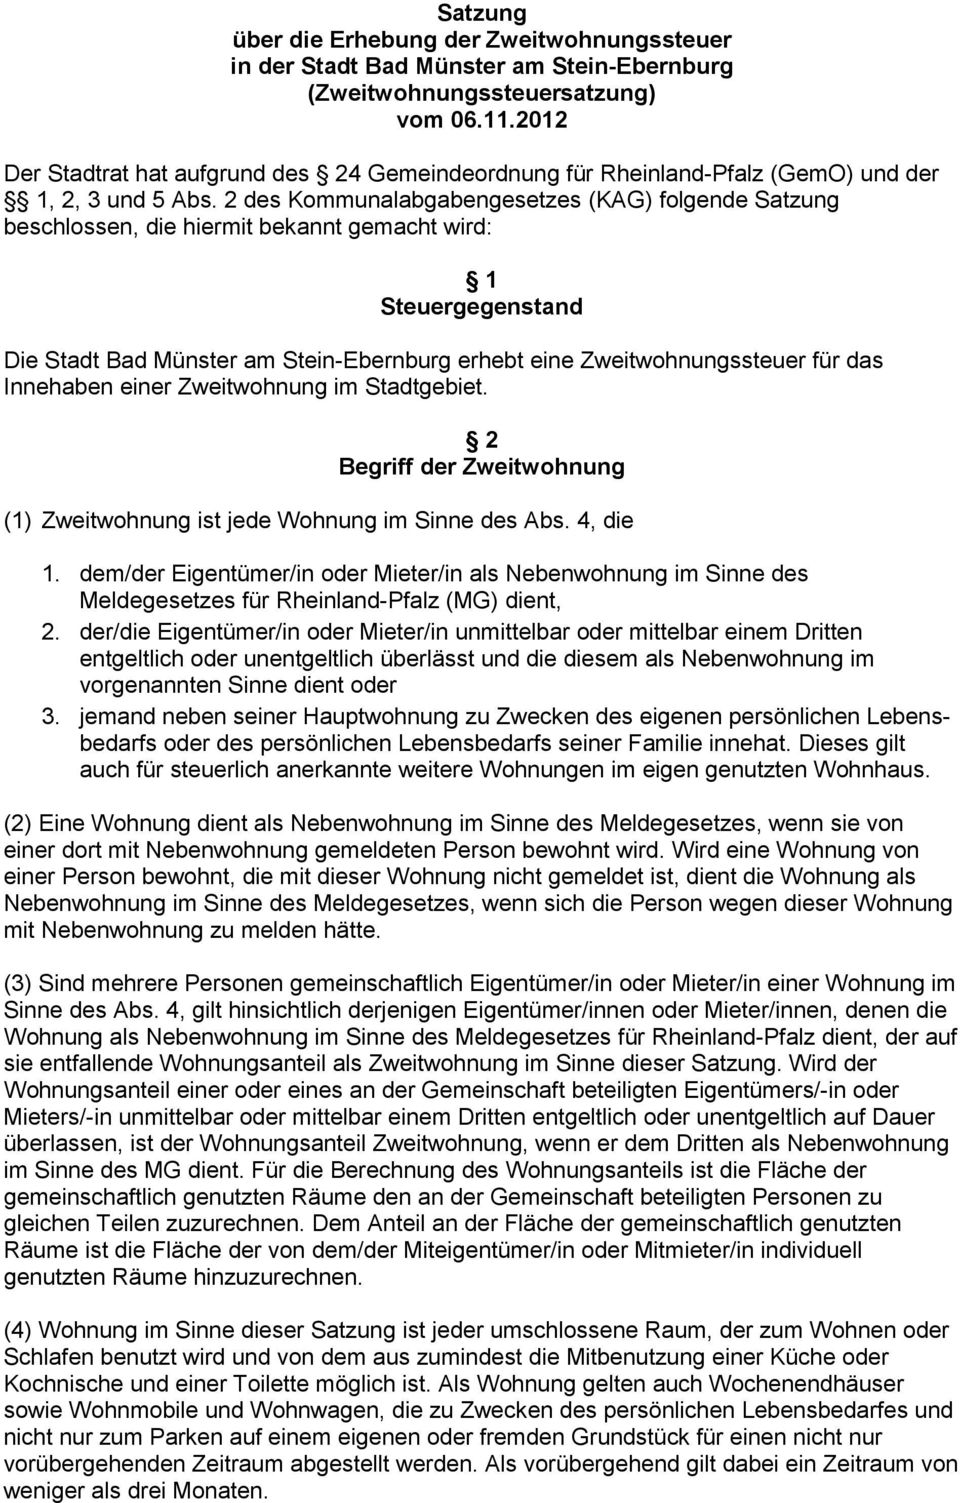 2 des Kommunalabgabengesetzes (KAG) folgende Satzung beschlossen, die hiermit bekannt gemacht wird: 1 Steuergegenstand Die Stadt Bad Münster am Stein-Ebernburg erhebt eine Zweitwohnungssteuer für das